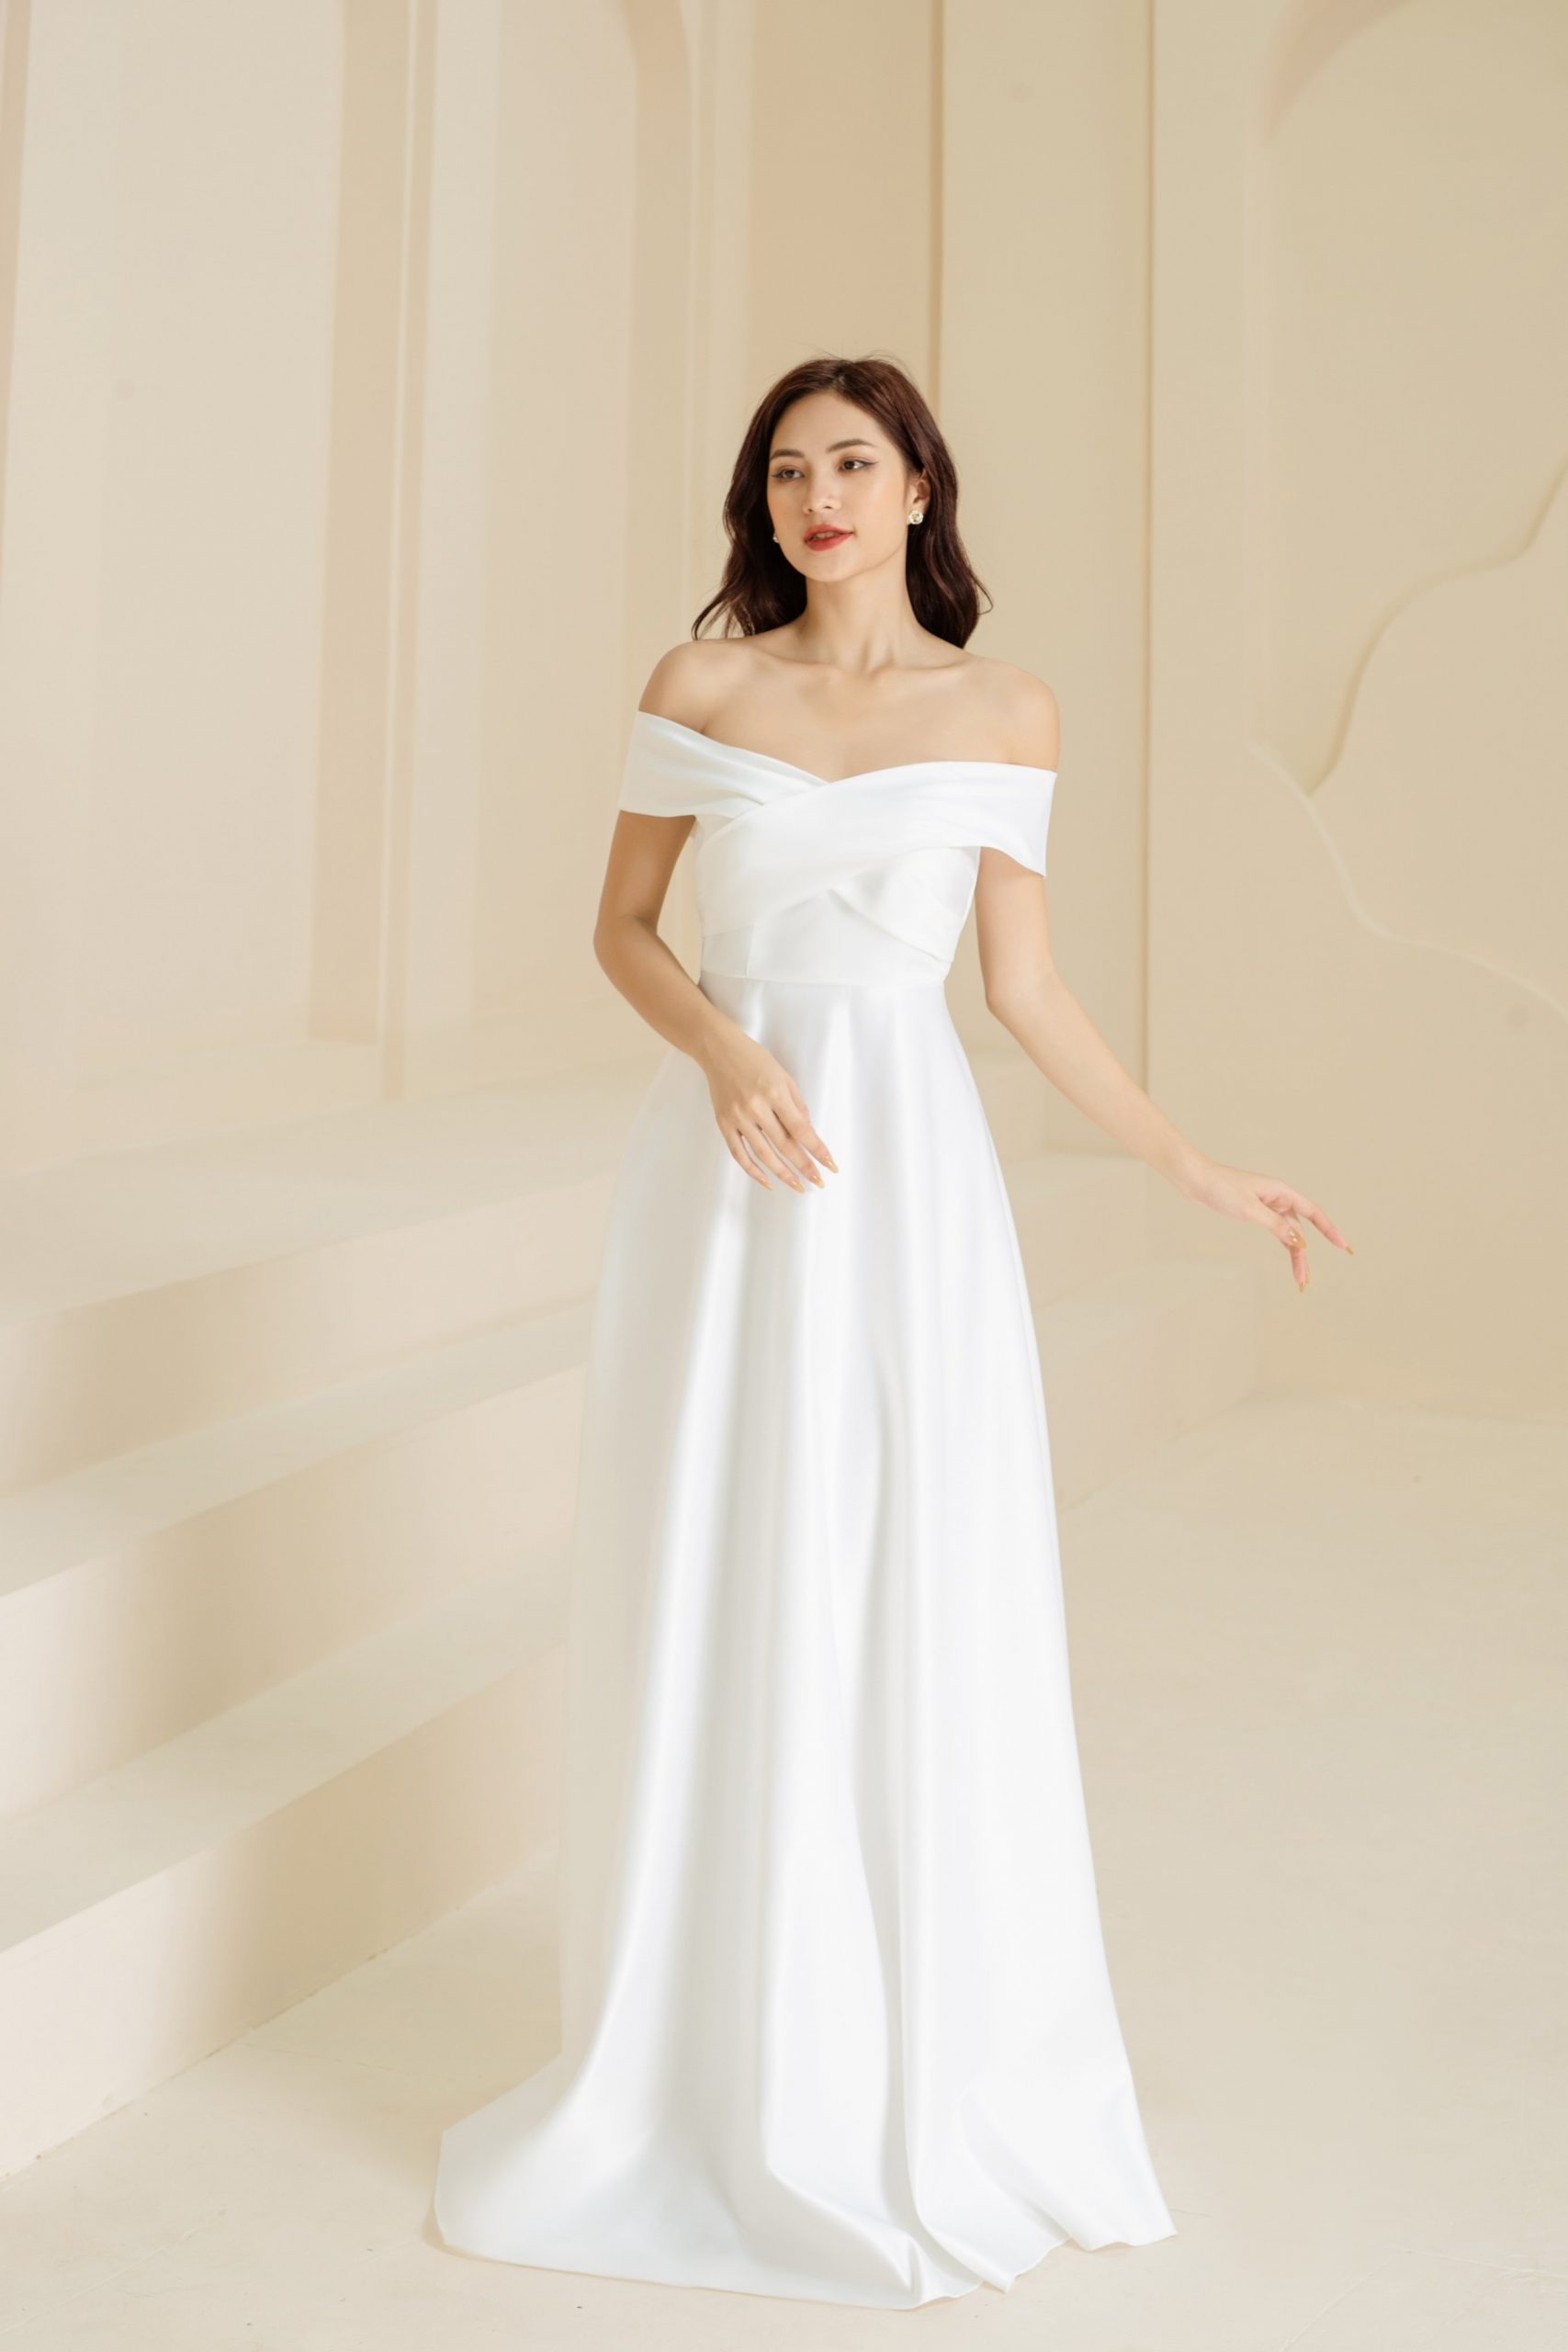 Đầm dạ hội trắng dáng xoè thiết kế tay dài sang trọng - D547